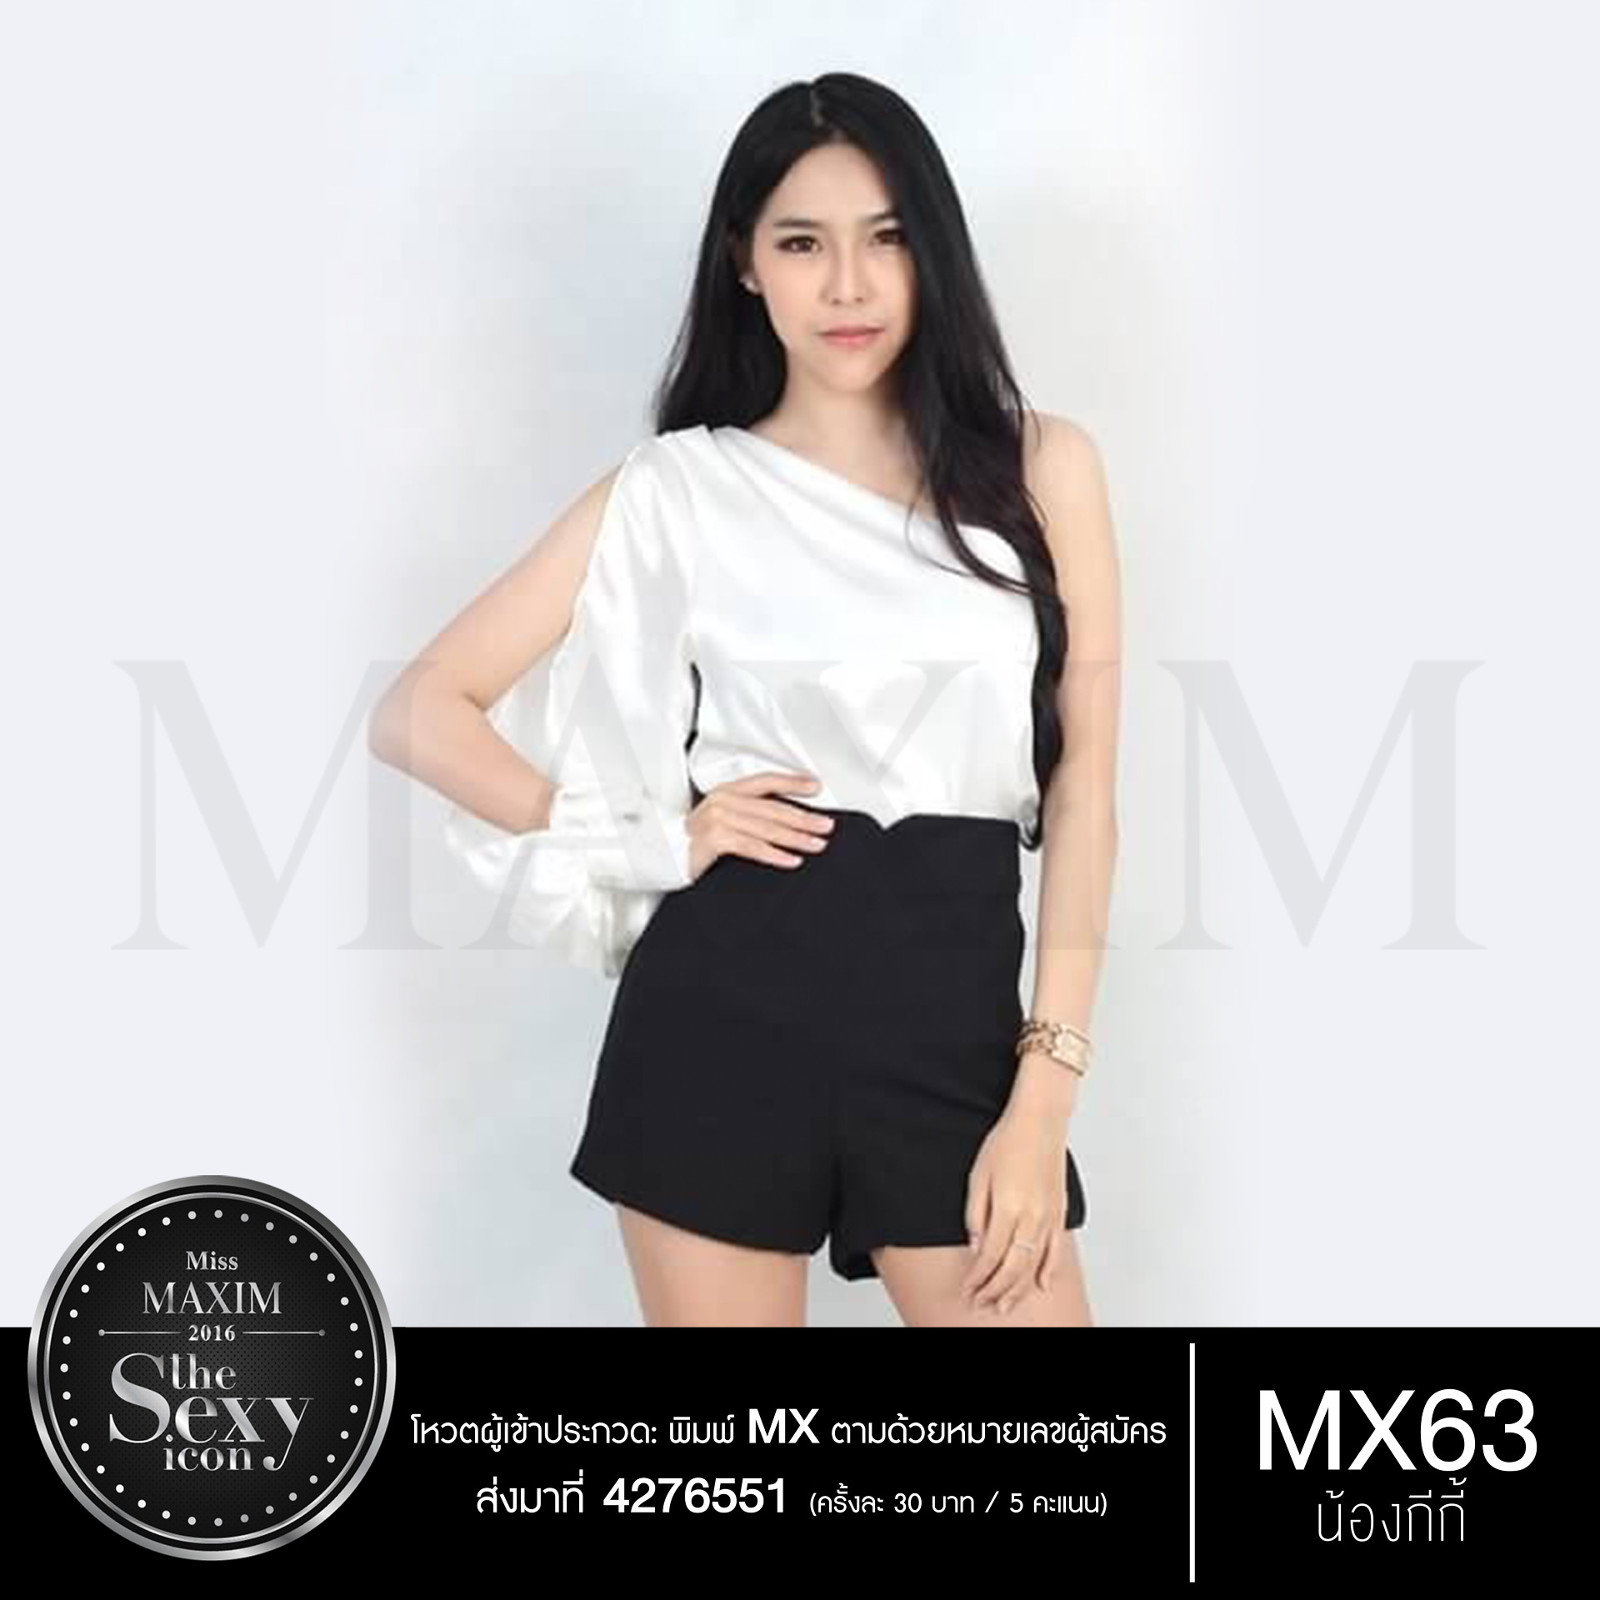 MX63 น้องกีกี้ ผู้สมัคร Miss Maxim 2016 : The Sexy